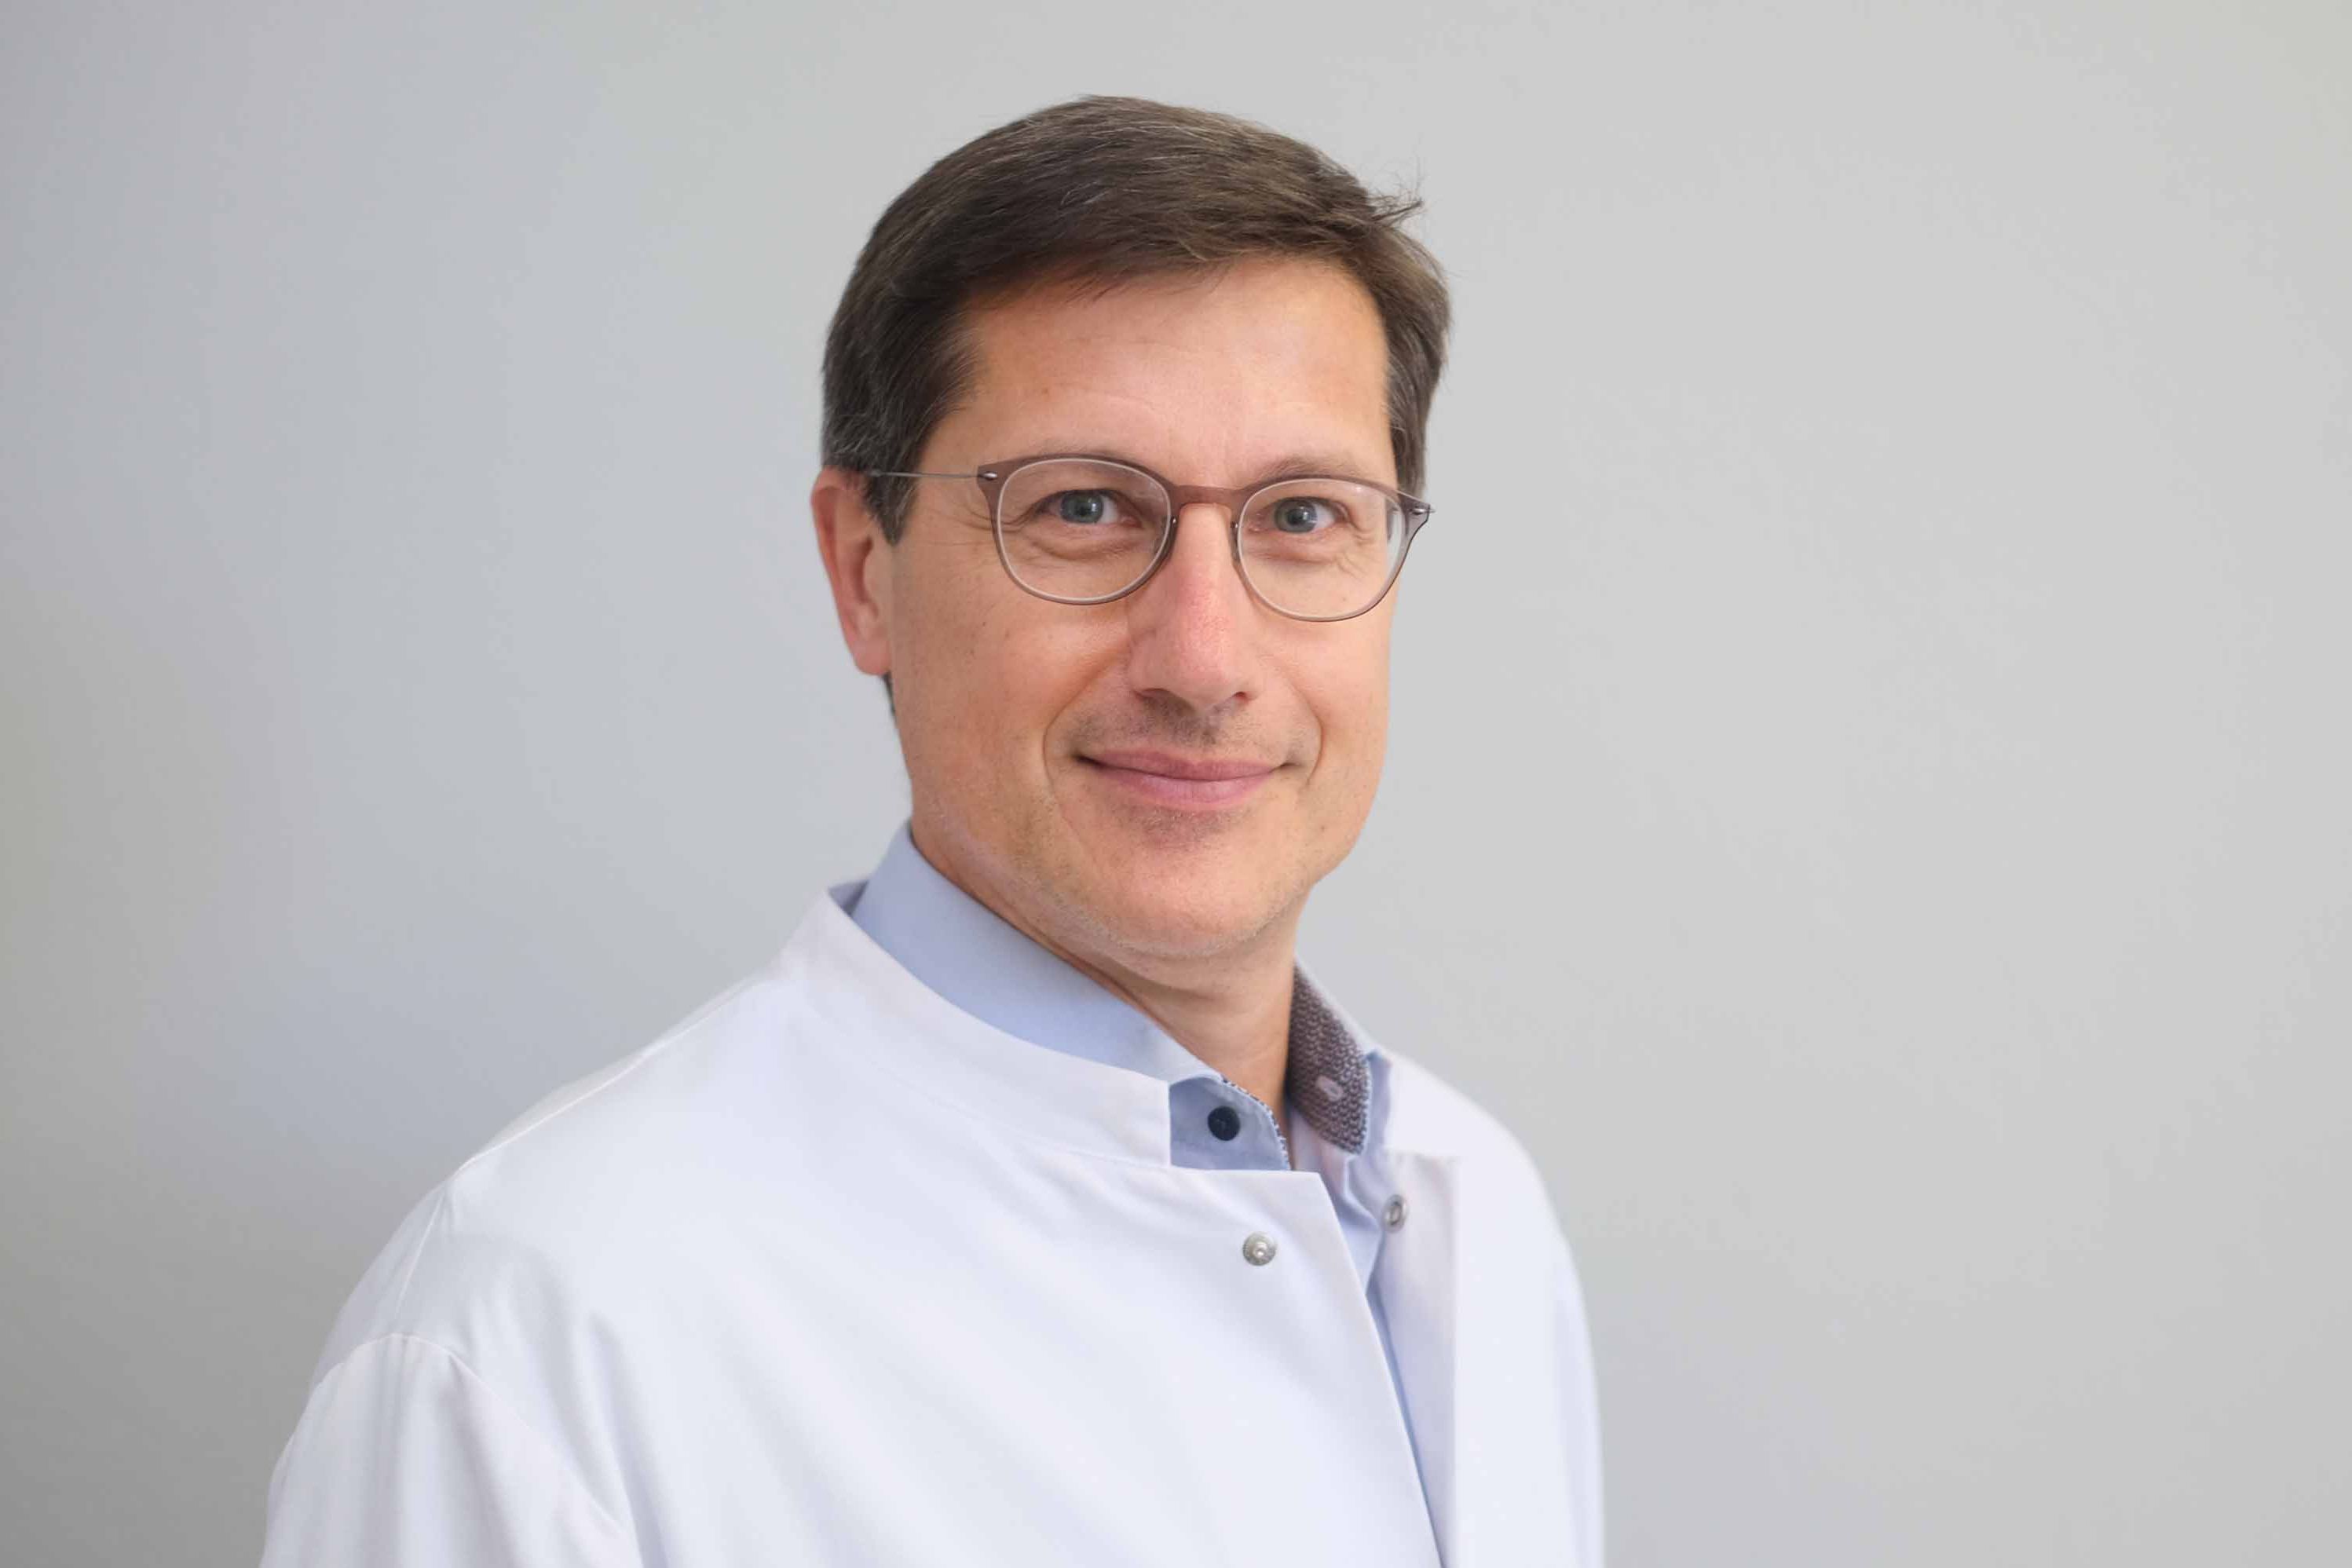 Ärztlicher Leiter MVZ Klinikum Saarbrücken, Facharzt für Pathologie mit der Zusatzbezeichnung Molekularpathologie